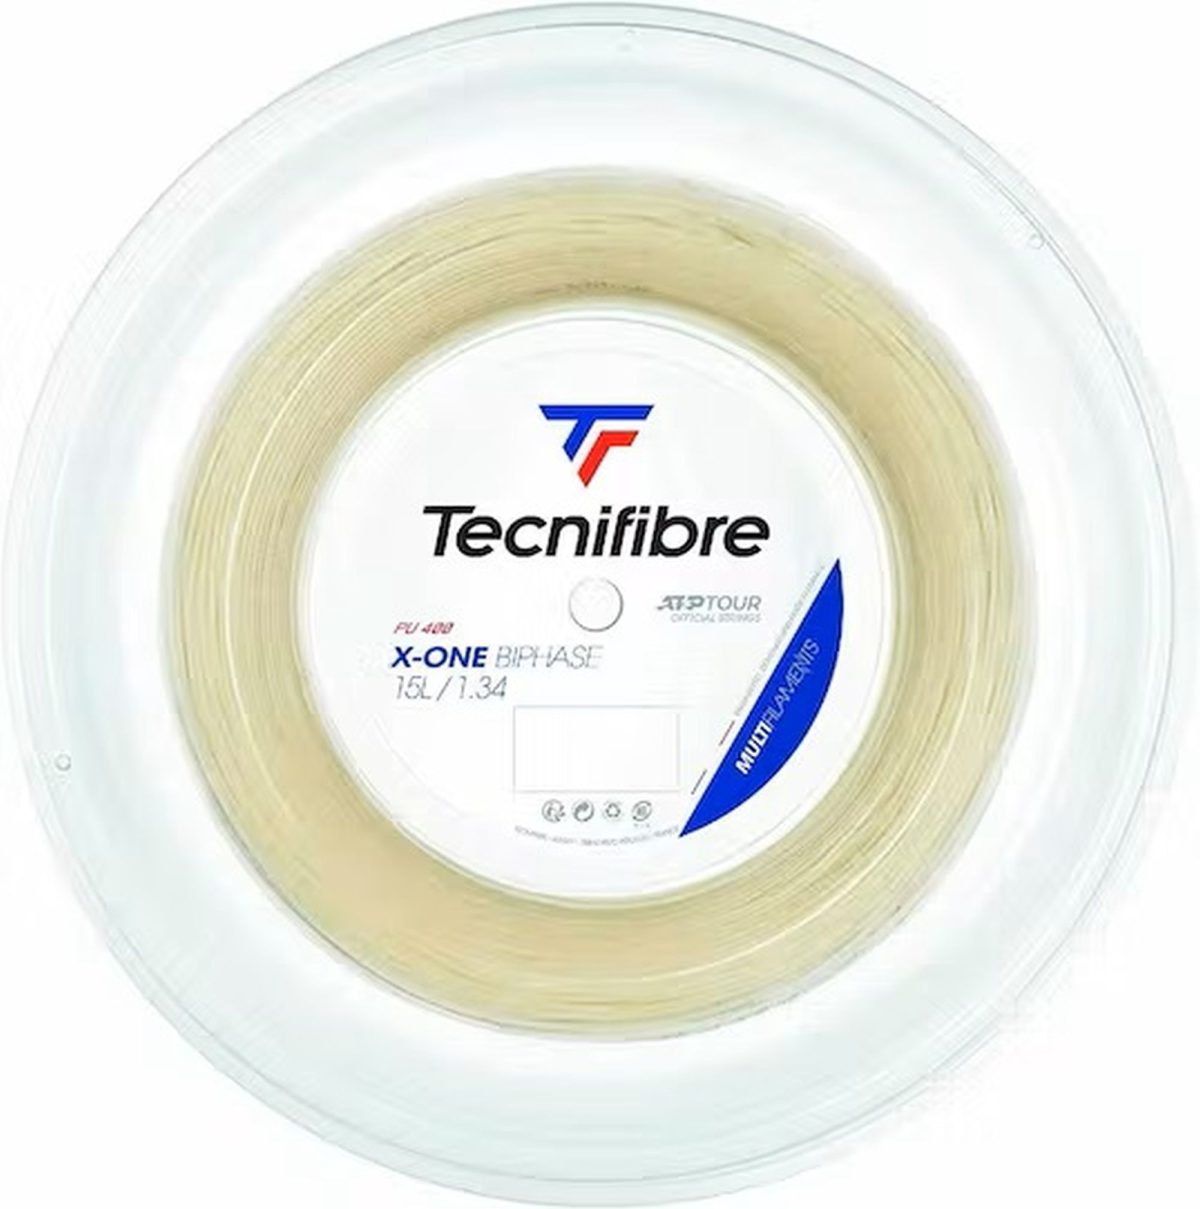 Tecnifibre X-One Biphase String 15L (Reel)